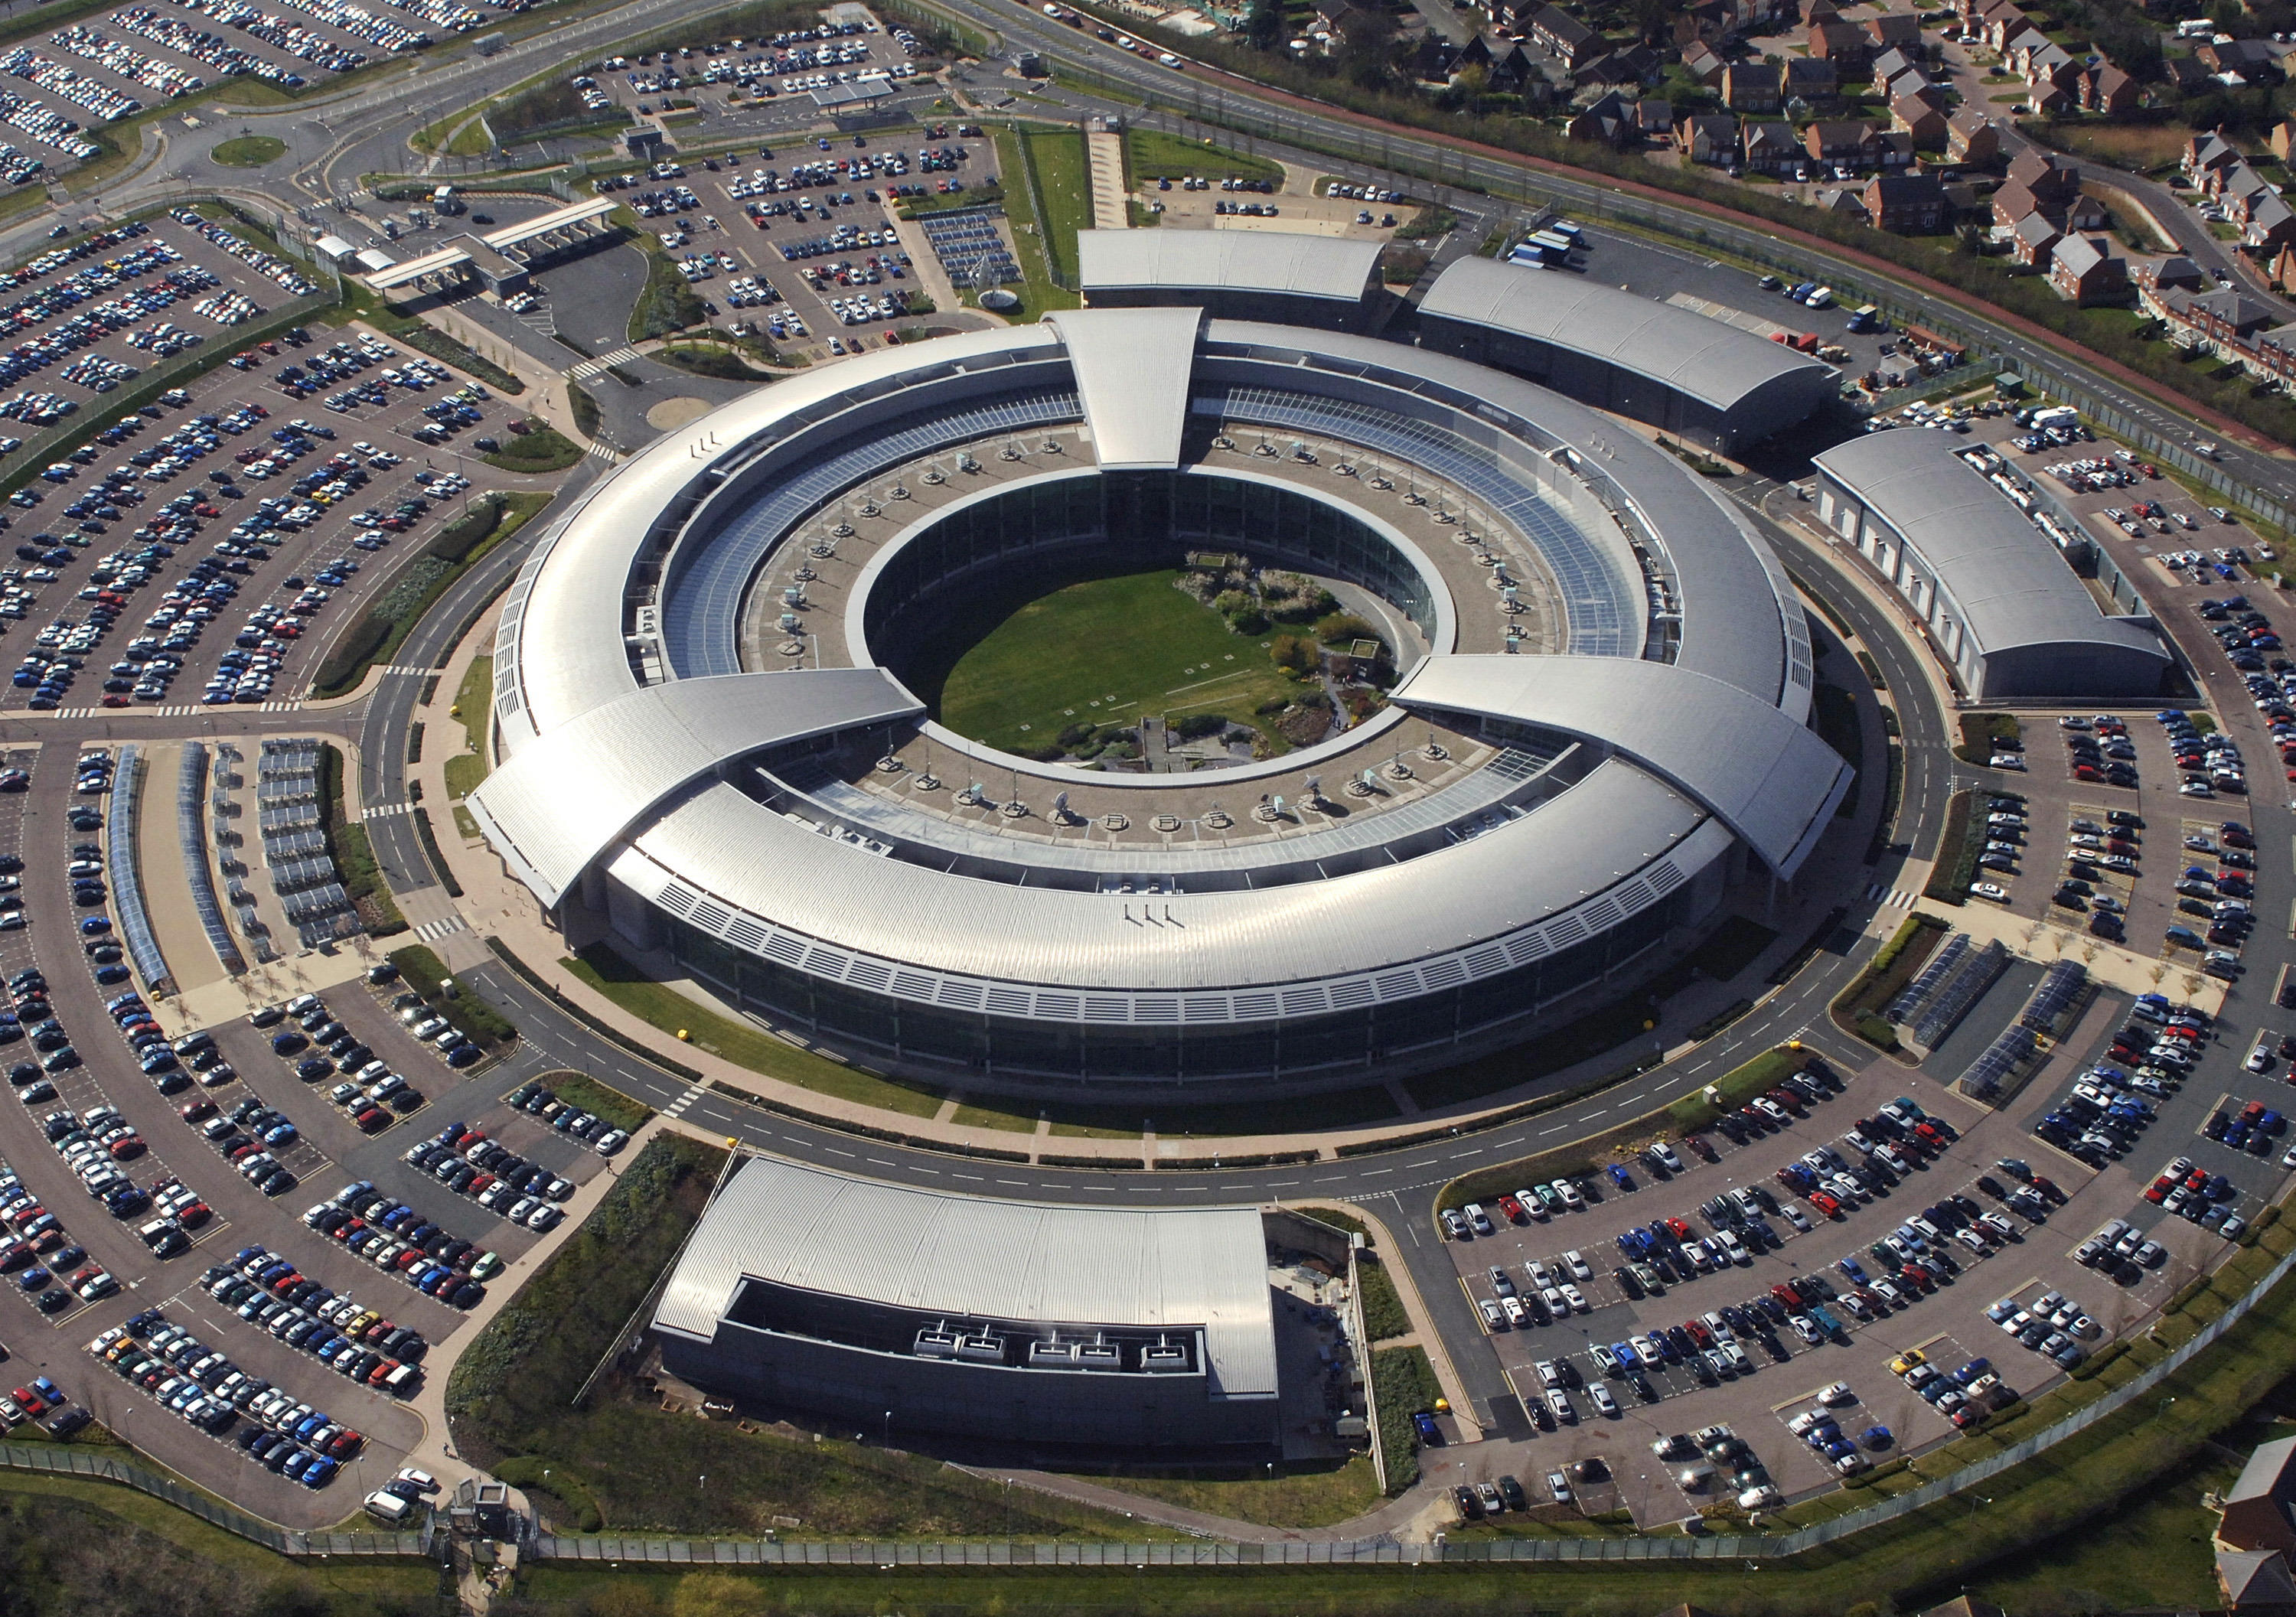 Auf dem Bild ist ein großes Gebäude. Es sieht aus wie ein großer Kringel. Es ist das Hauptquatier vom Geheimdienst GCHQ